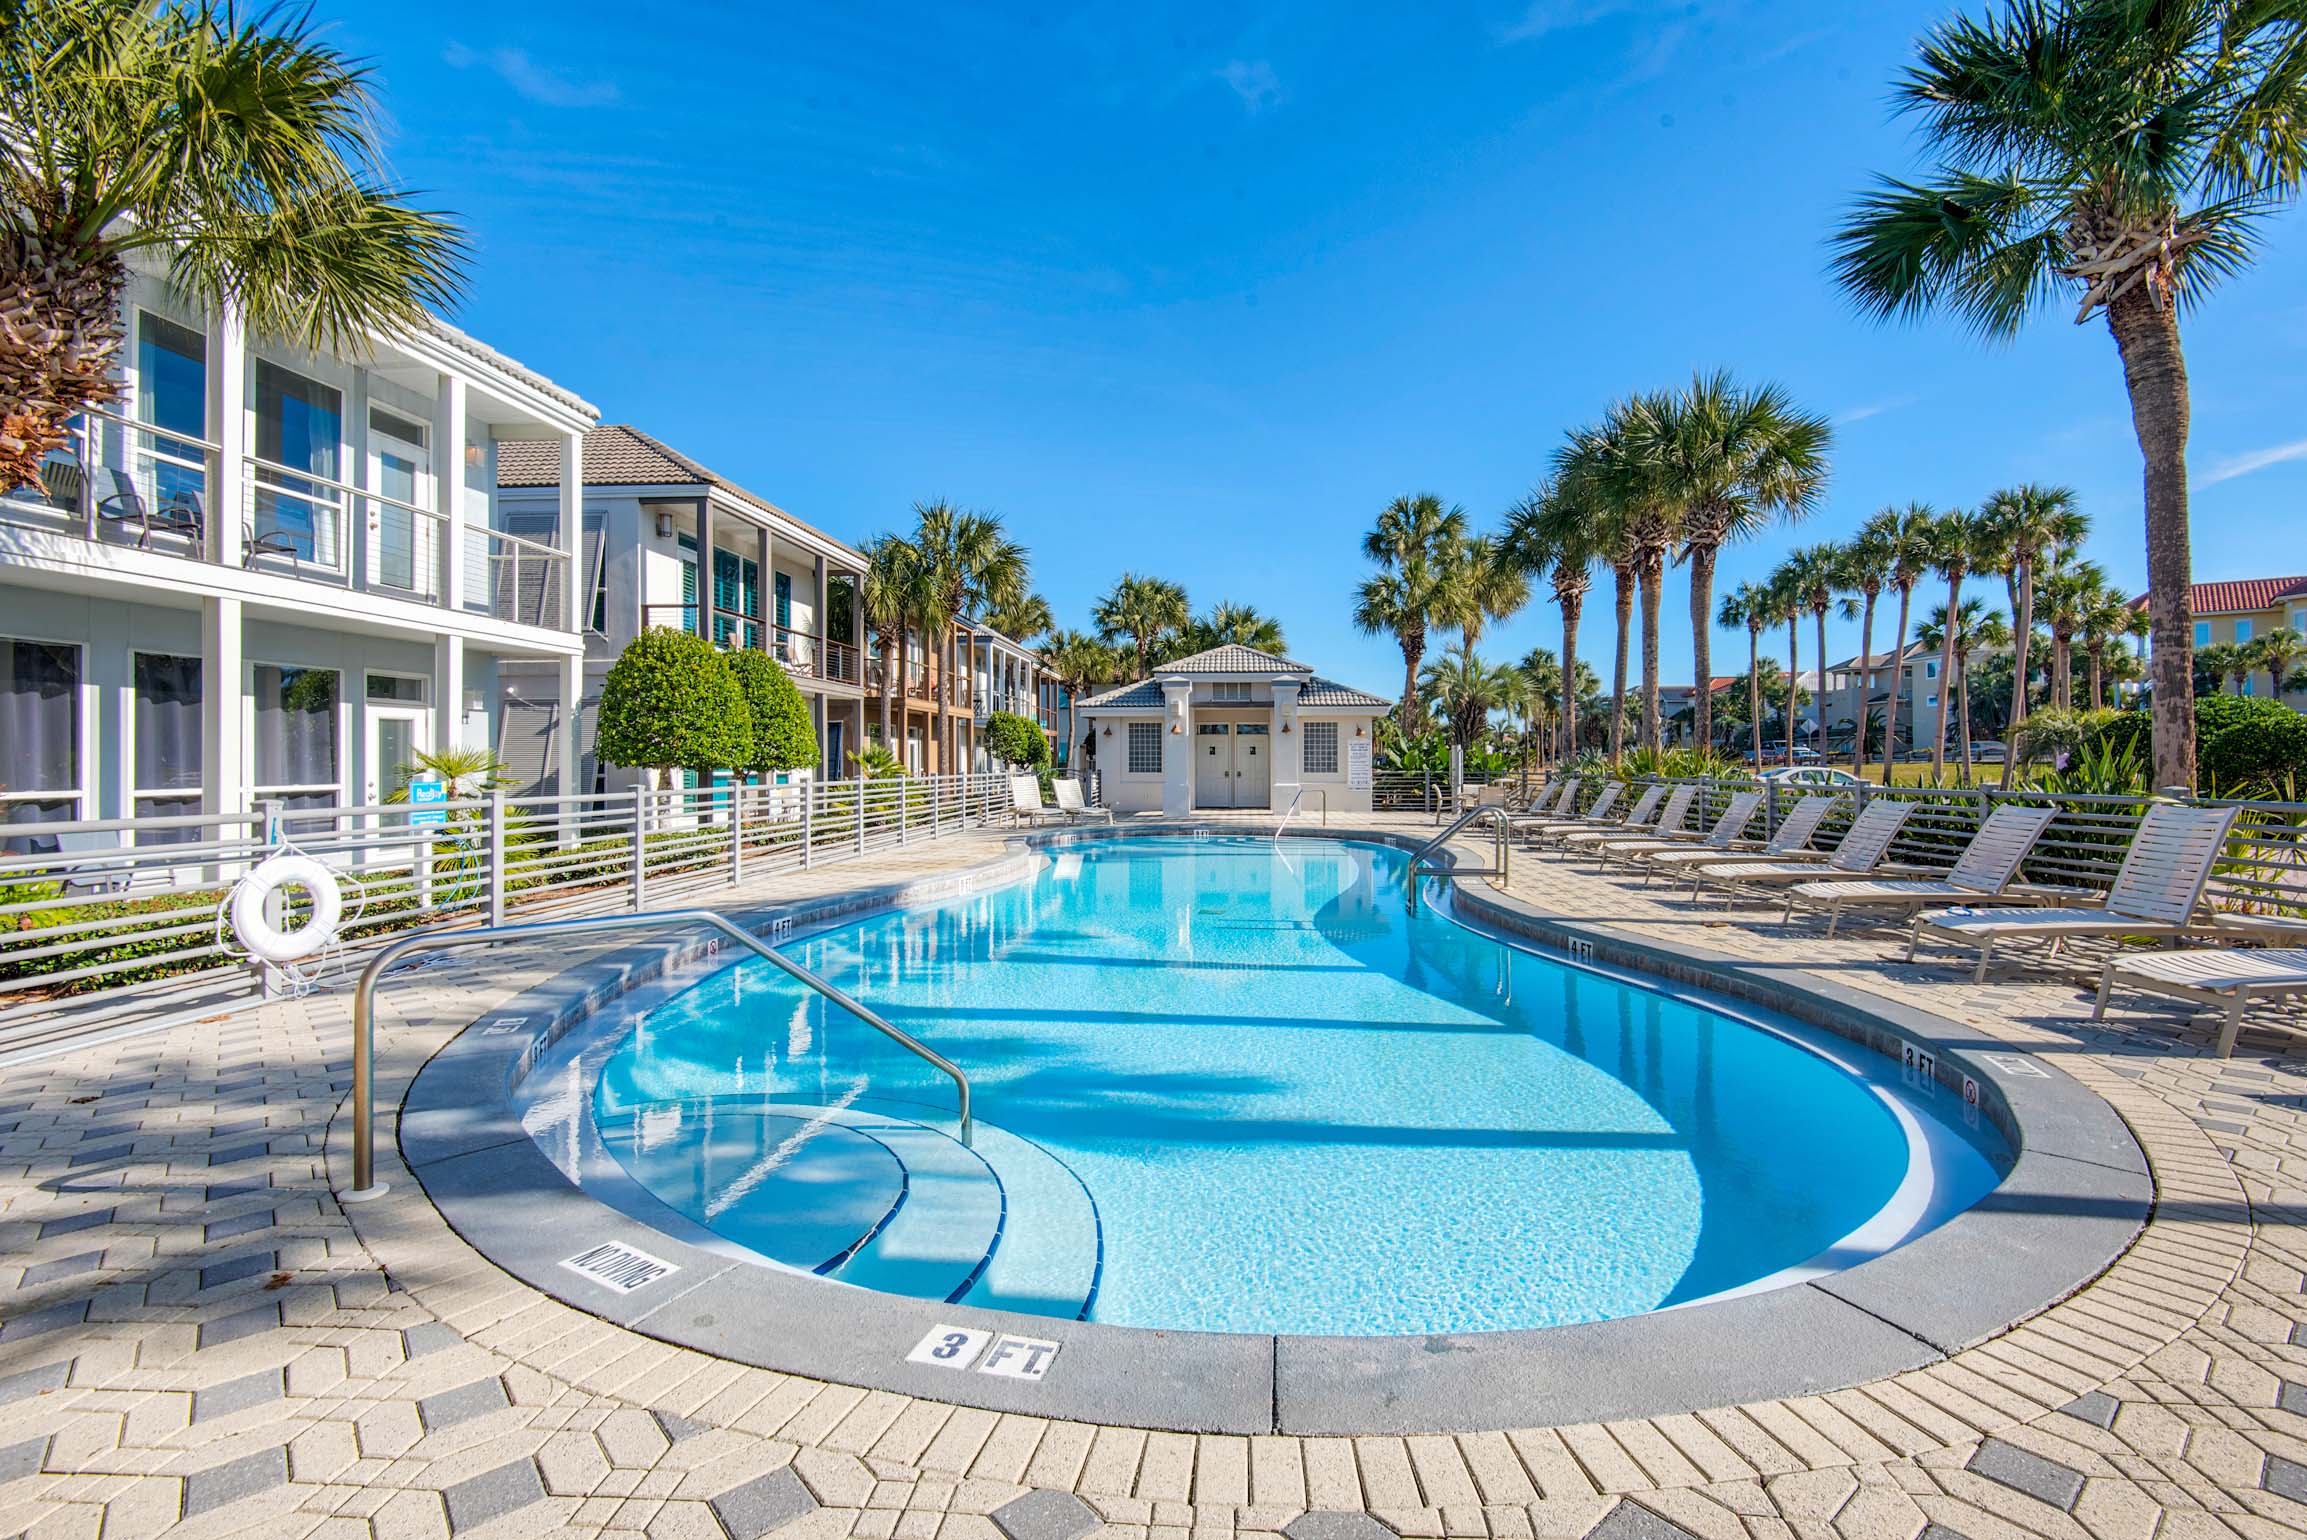 Destiny Beach Villa pool